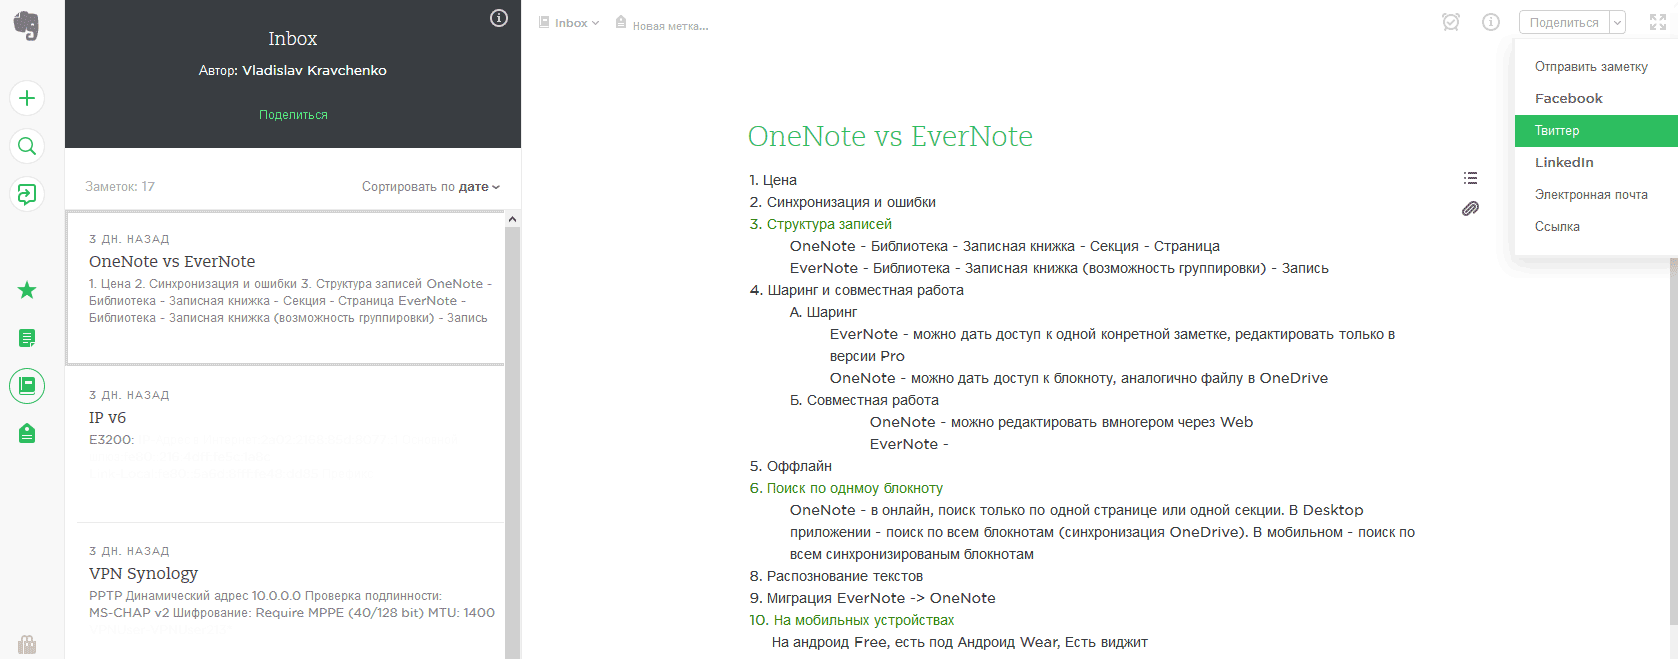 Веб-интерфейс Evernote